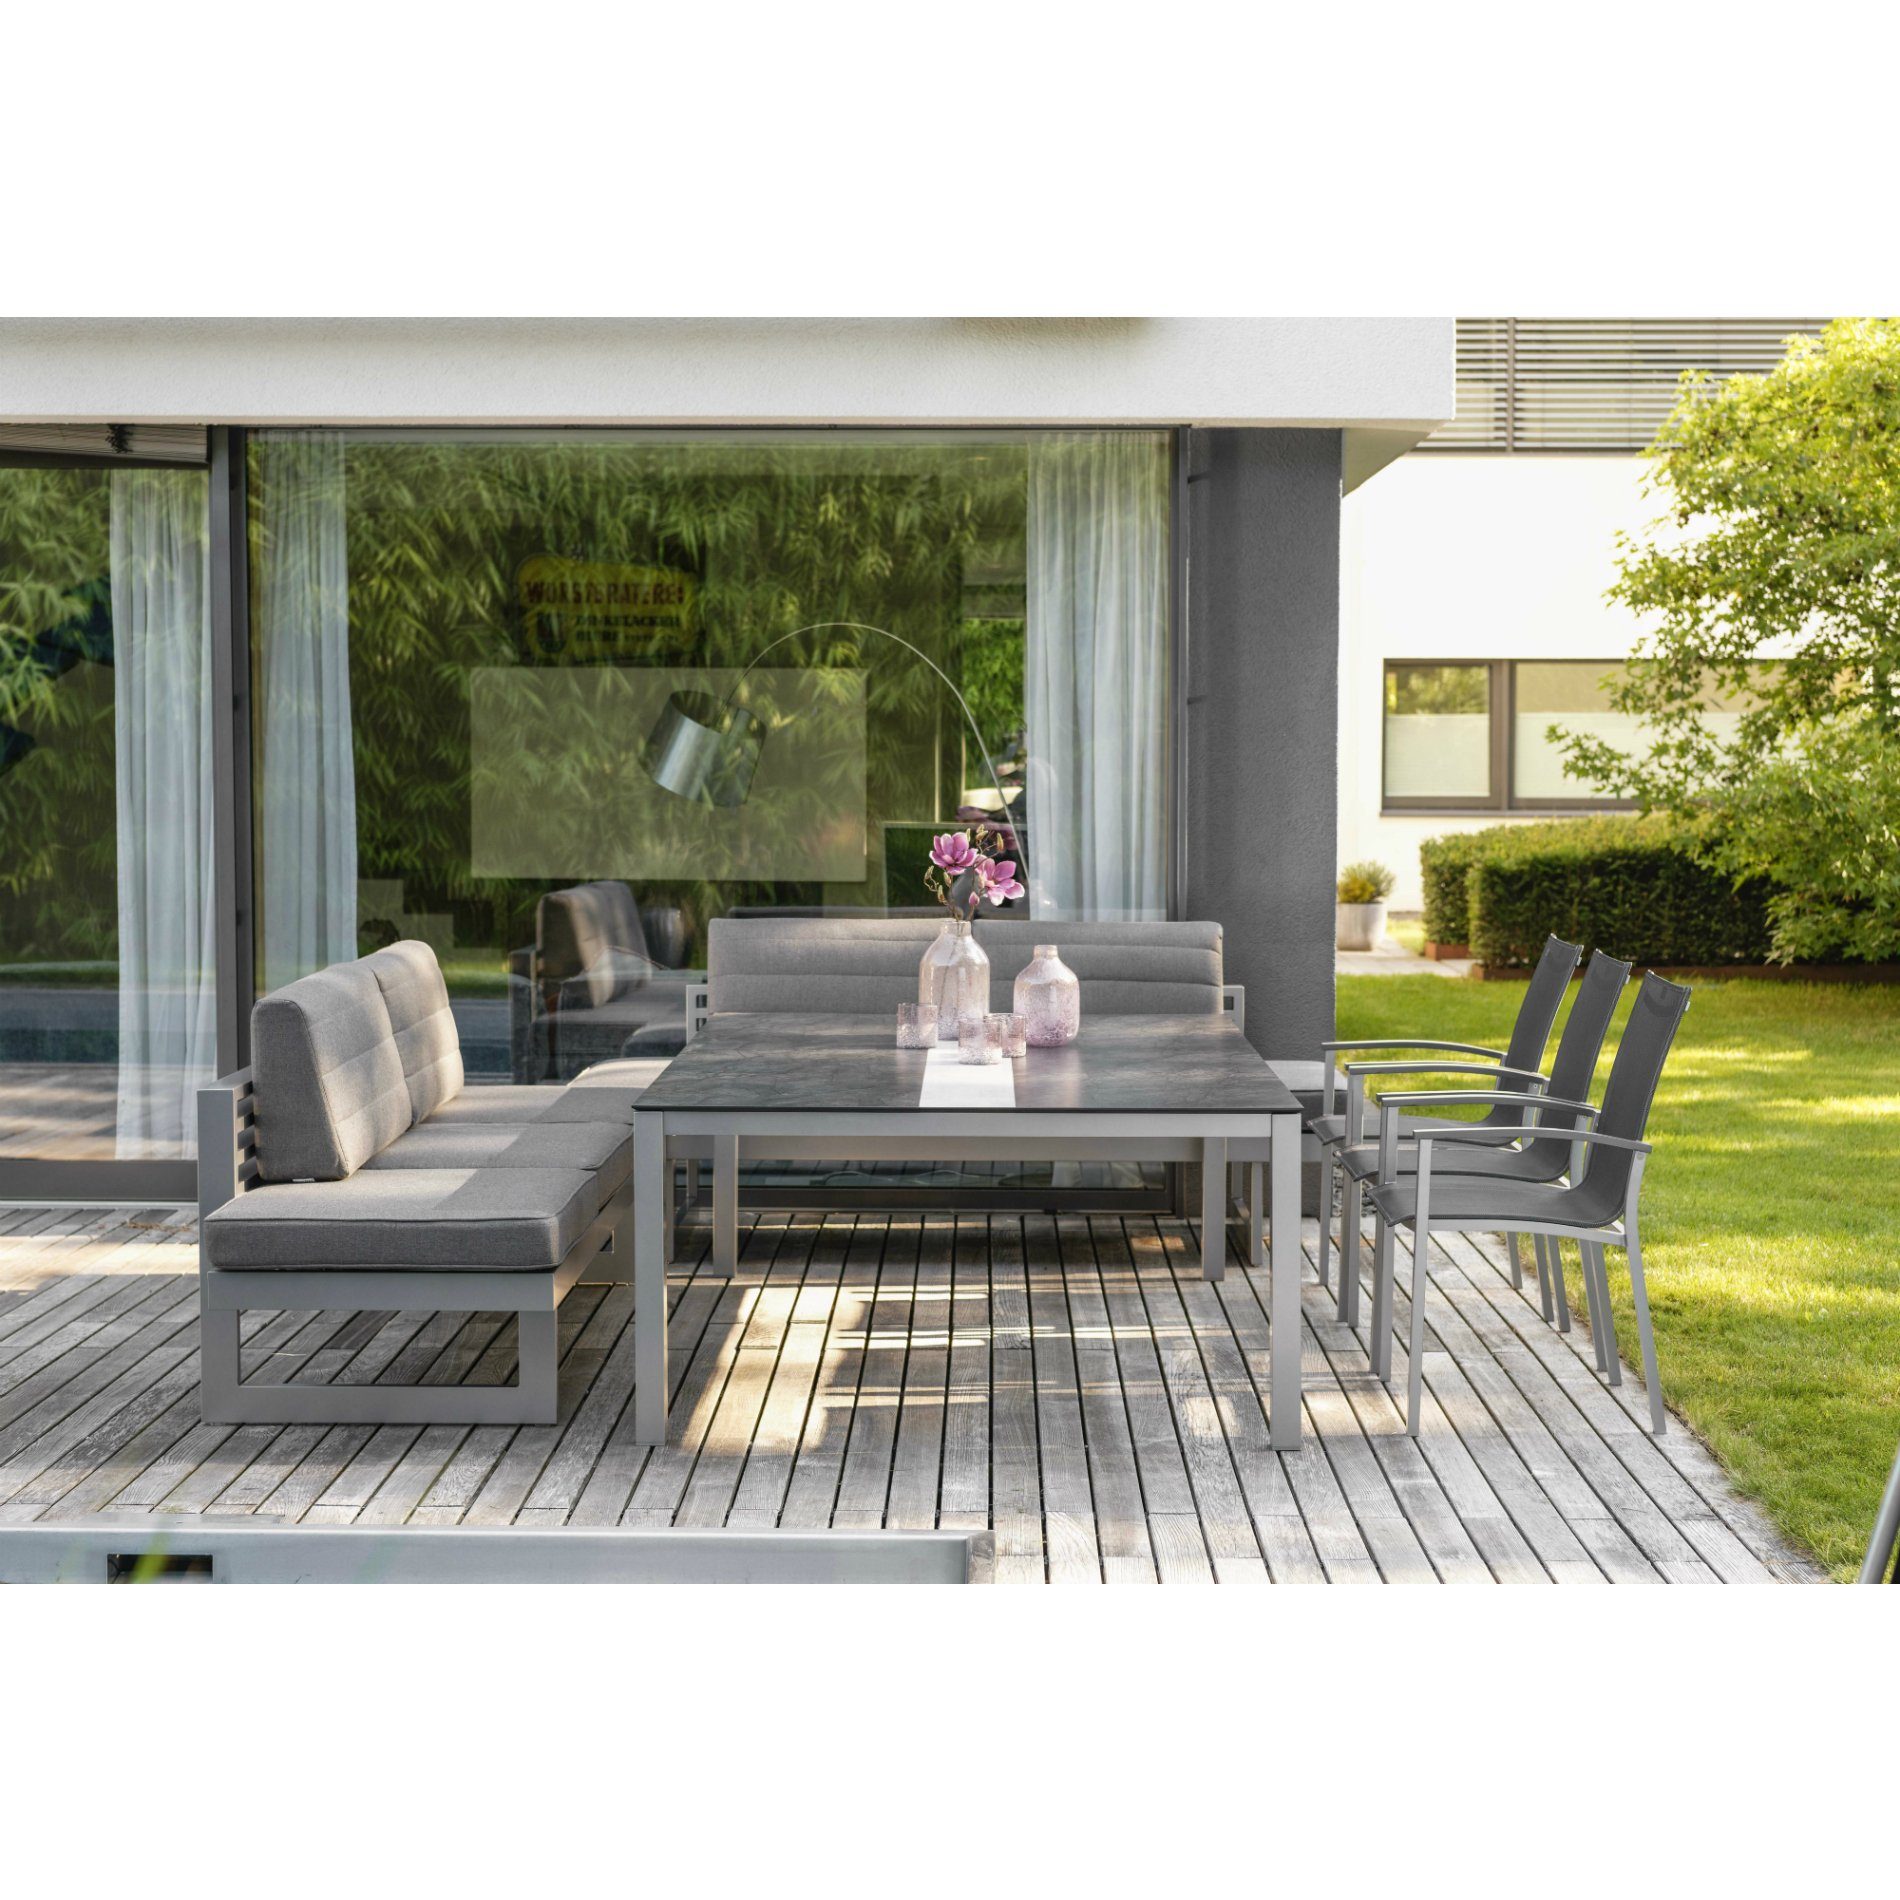 Stern Gartenmöbel-Set mit Gartentisch 200x140 cm und Dining-Bank "New Holly" sowie Stapelsessel "Evoee"